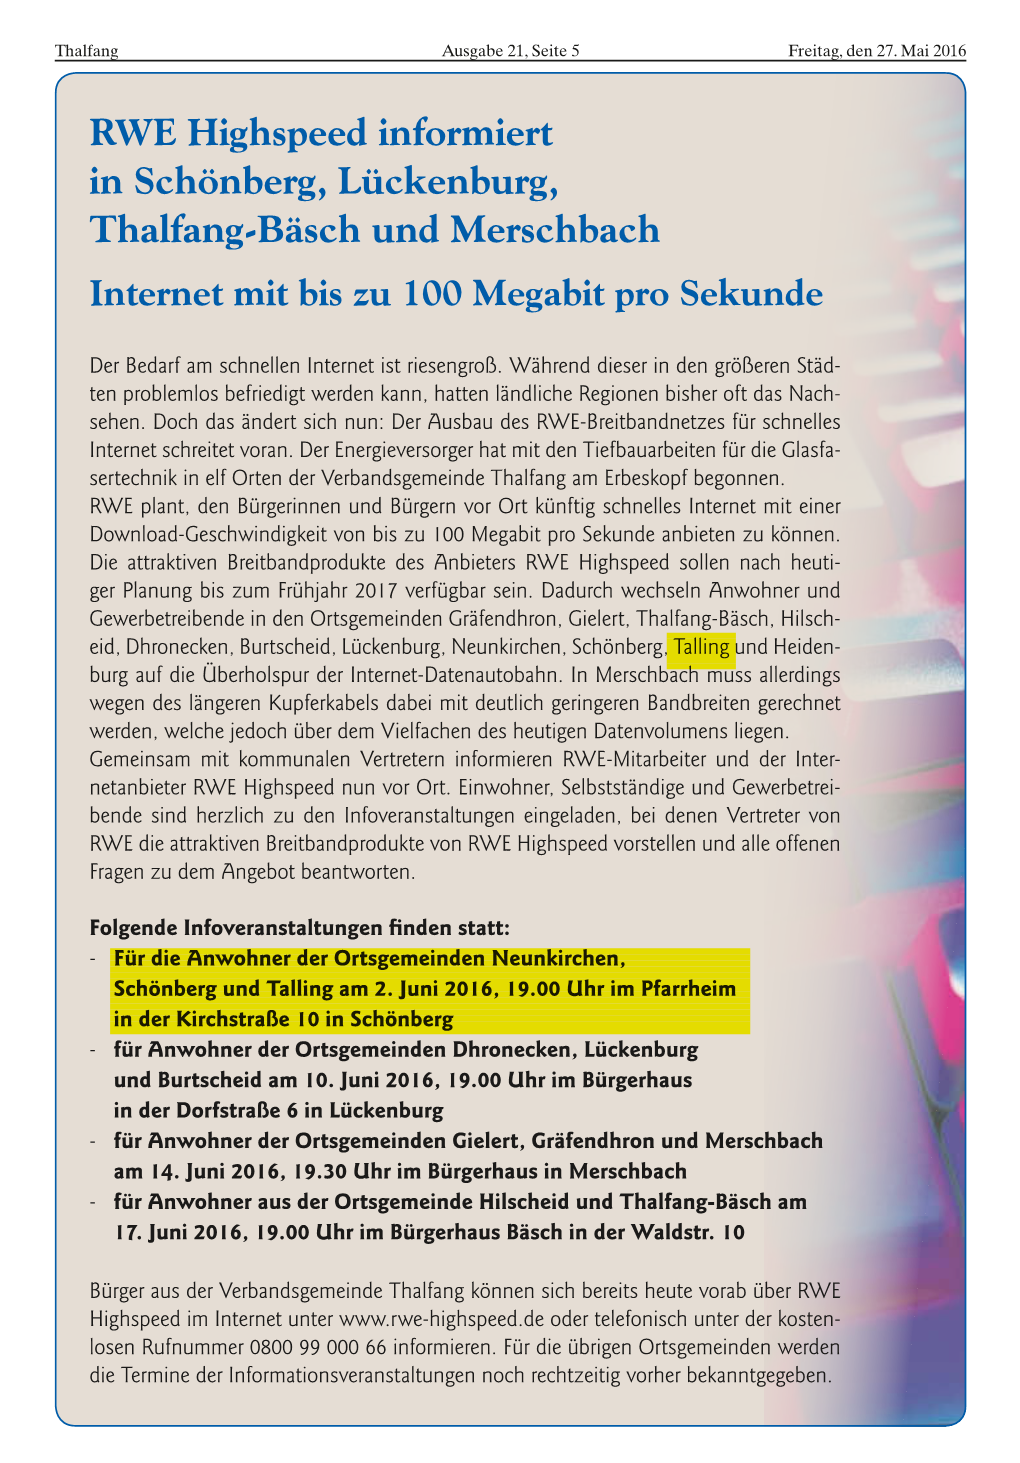 RWE Highspeed Informiert in Schönberg, Lückenburg, Thalfang-Bäsch Und Merschbach Internet Mit Bis Zu 100 Megabit Pro Sekunde